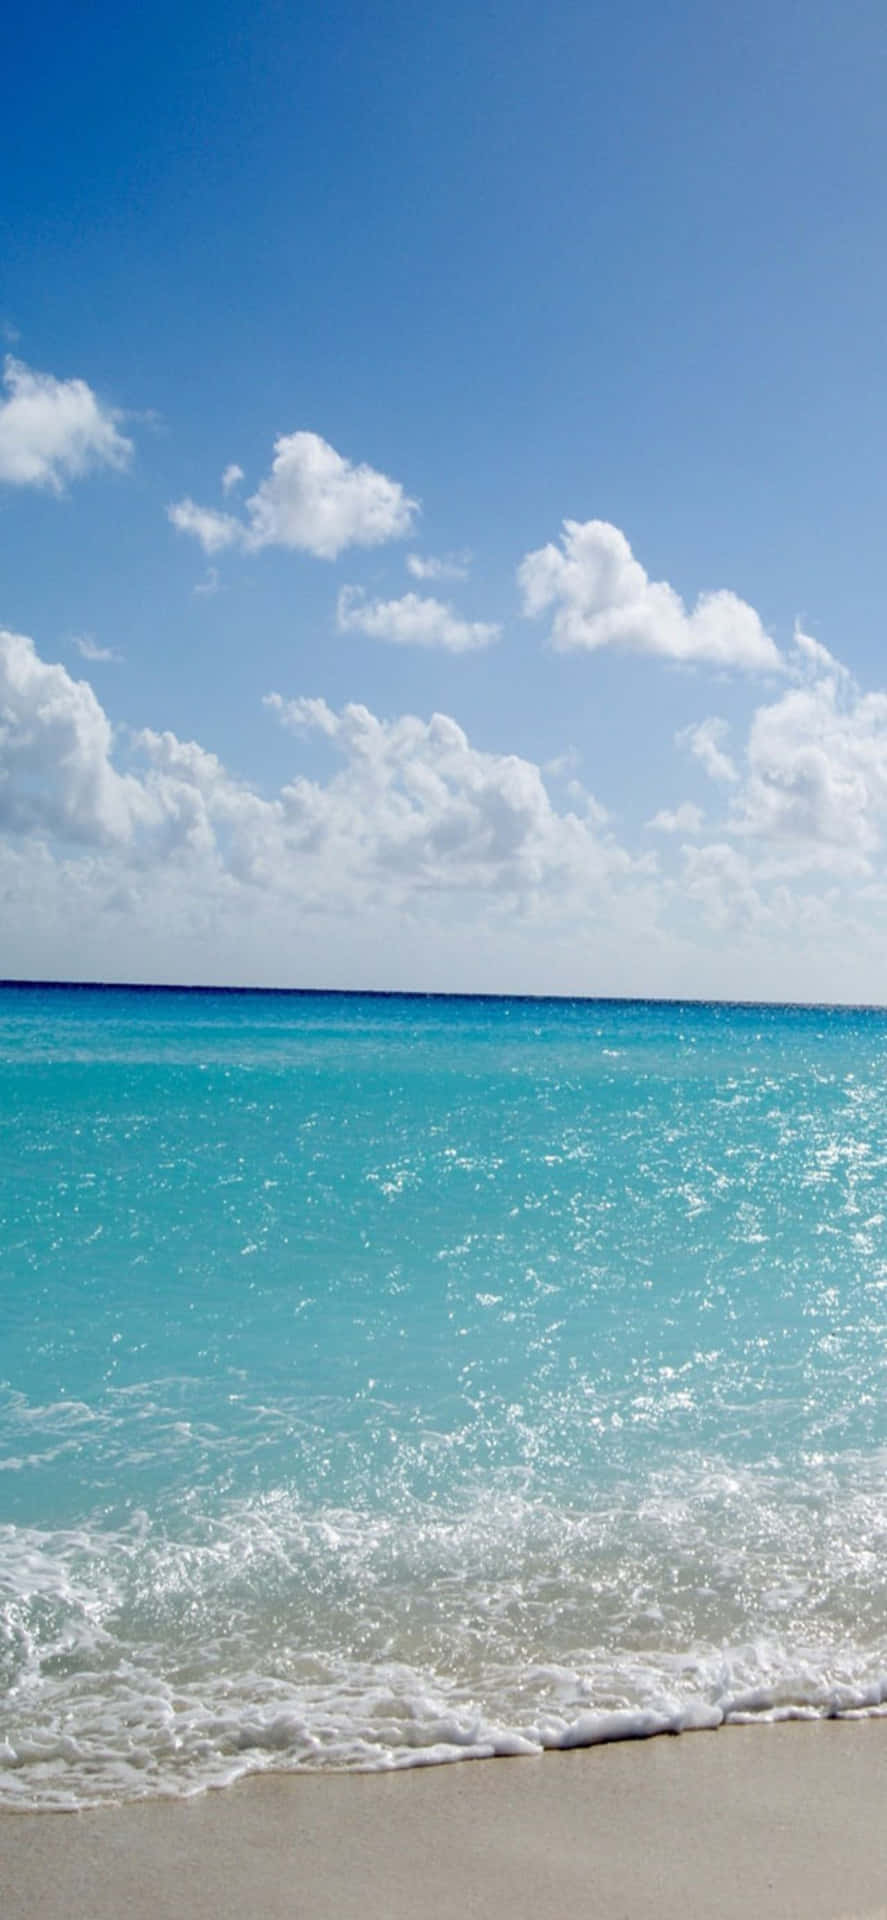 An Iphone X Showcasing A Stunning Beach Background.